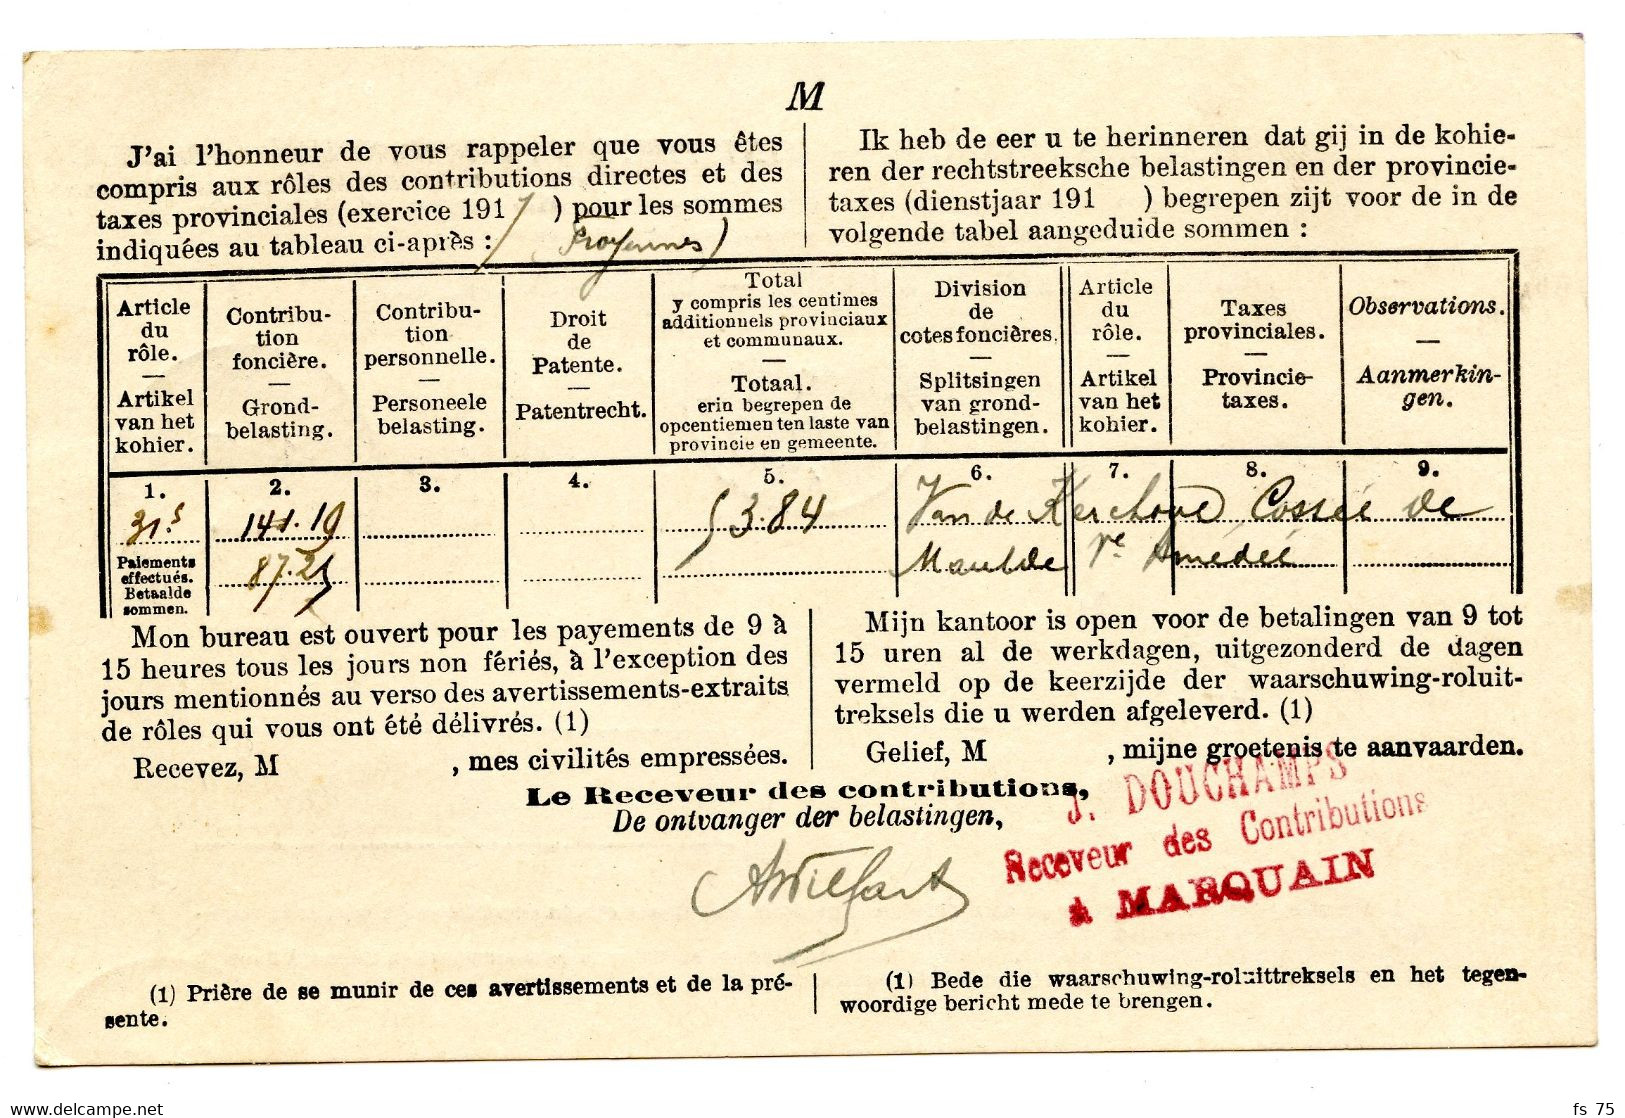 BELGIQUE - SIMPLE CERCLE RELAIS A ETOILES MARQUAIN SUR LETTRE DE SERVICE, 1919 - Postmarks With Stars